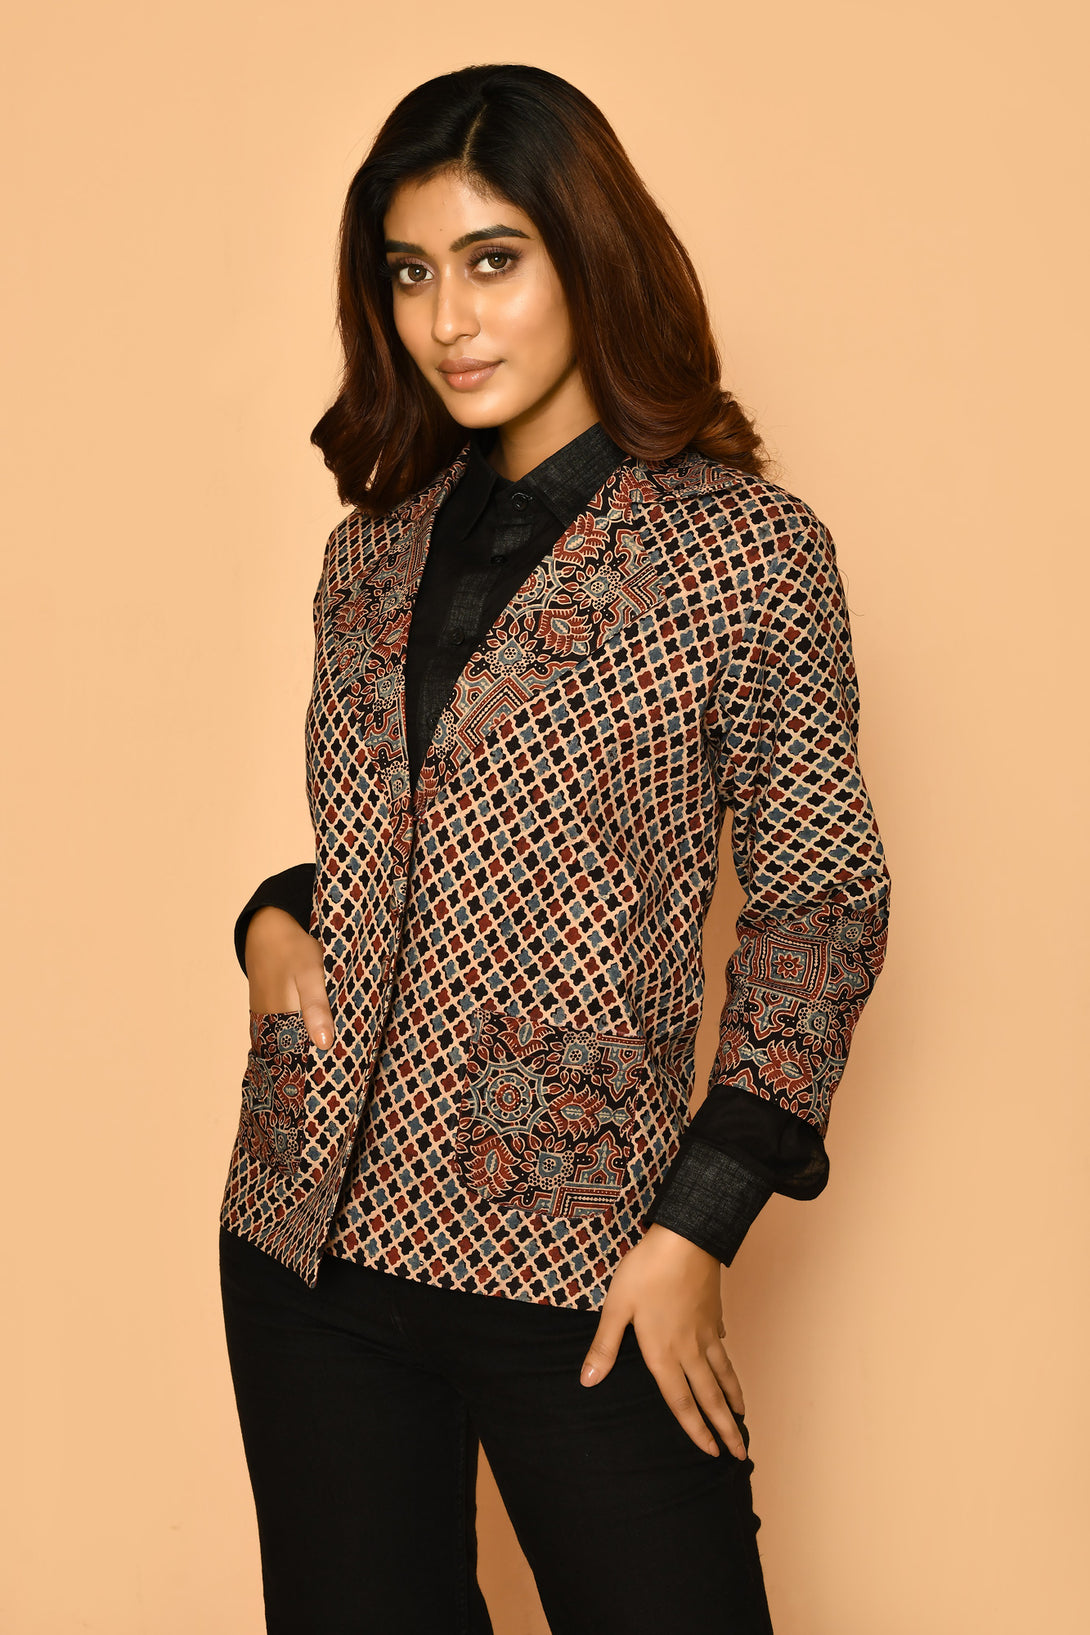 buy best women corporate wear printed cotton jackets